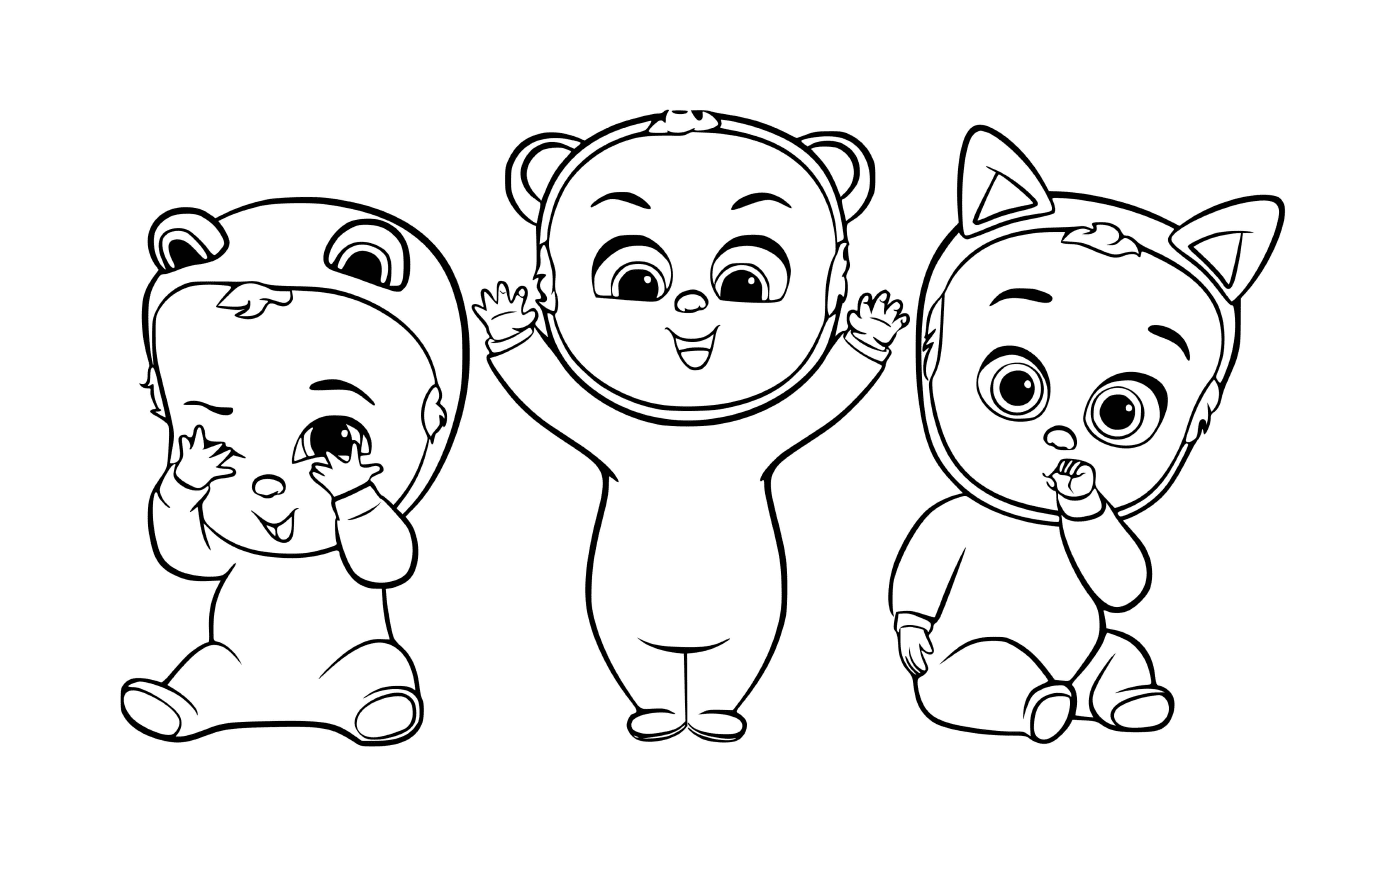   Trois bébés dessinés sont alignés 